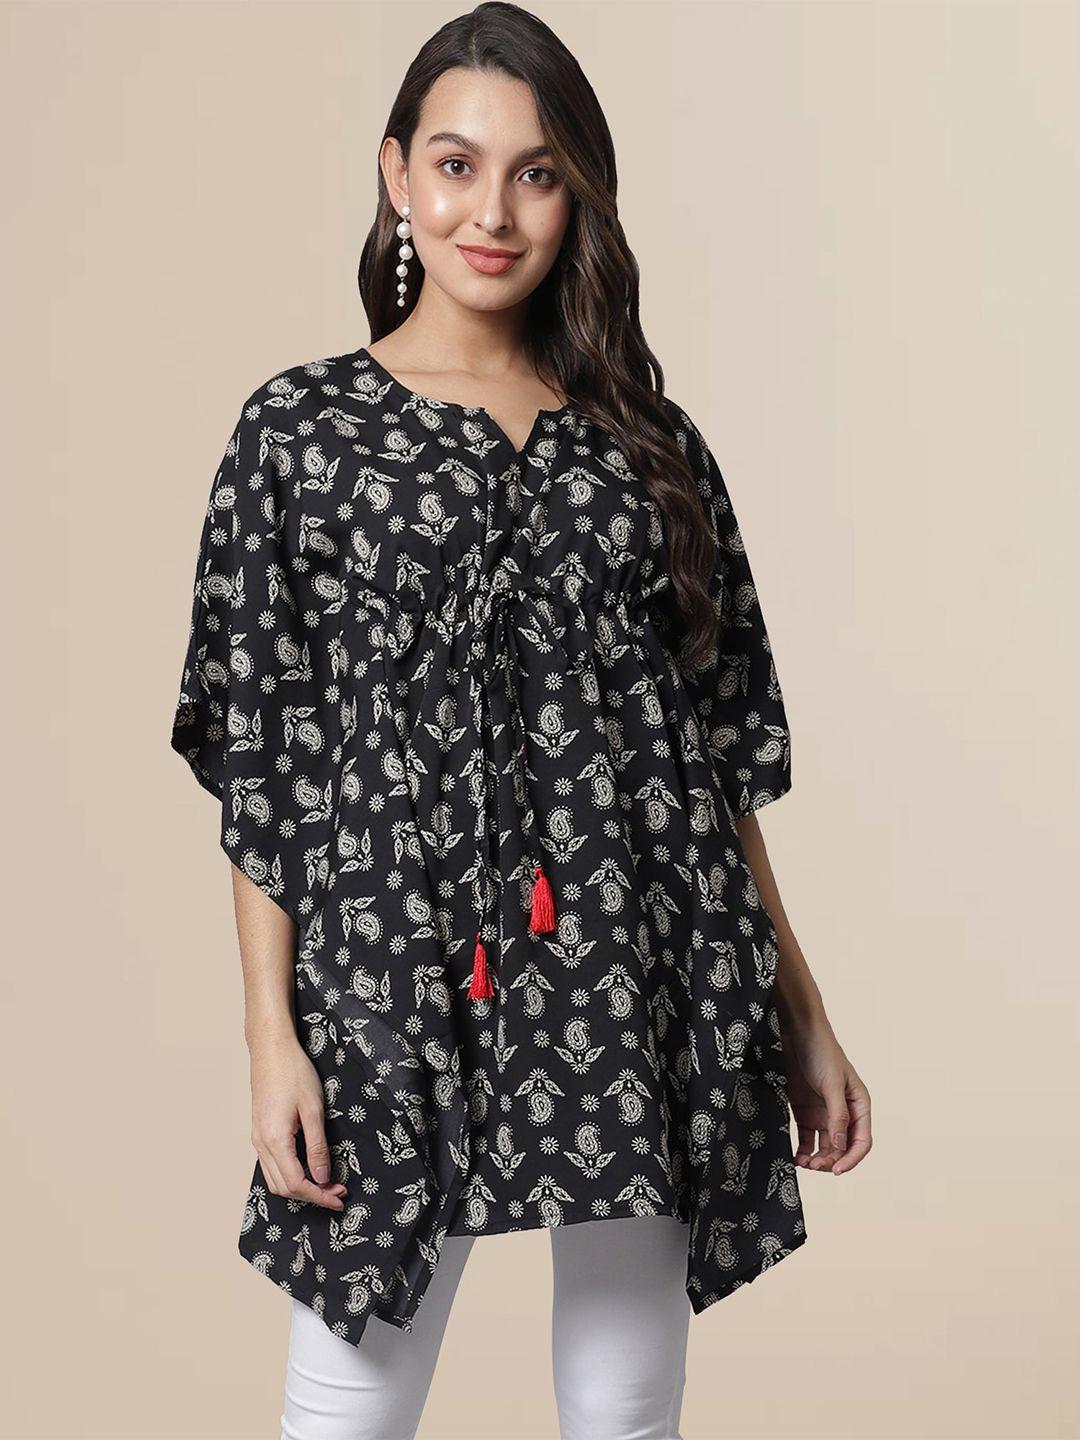 baesd ethnic motifs printed extended sleeves kaftan longline top